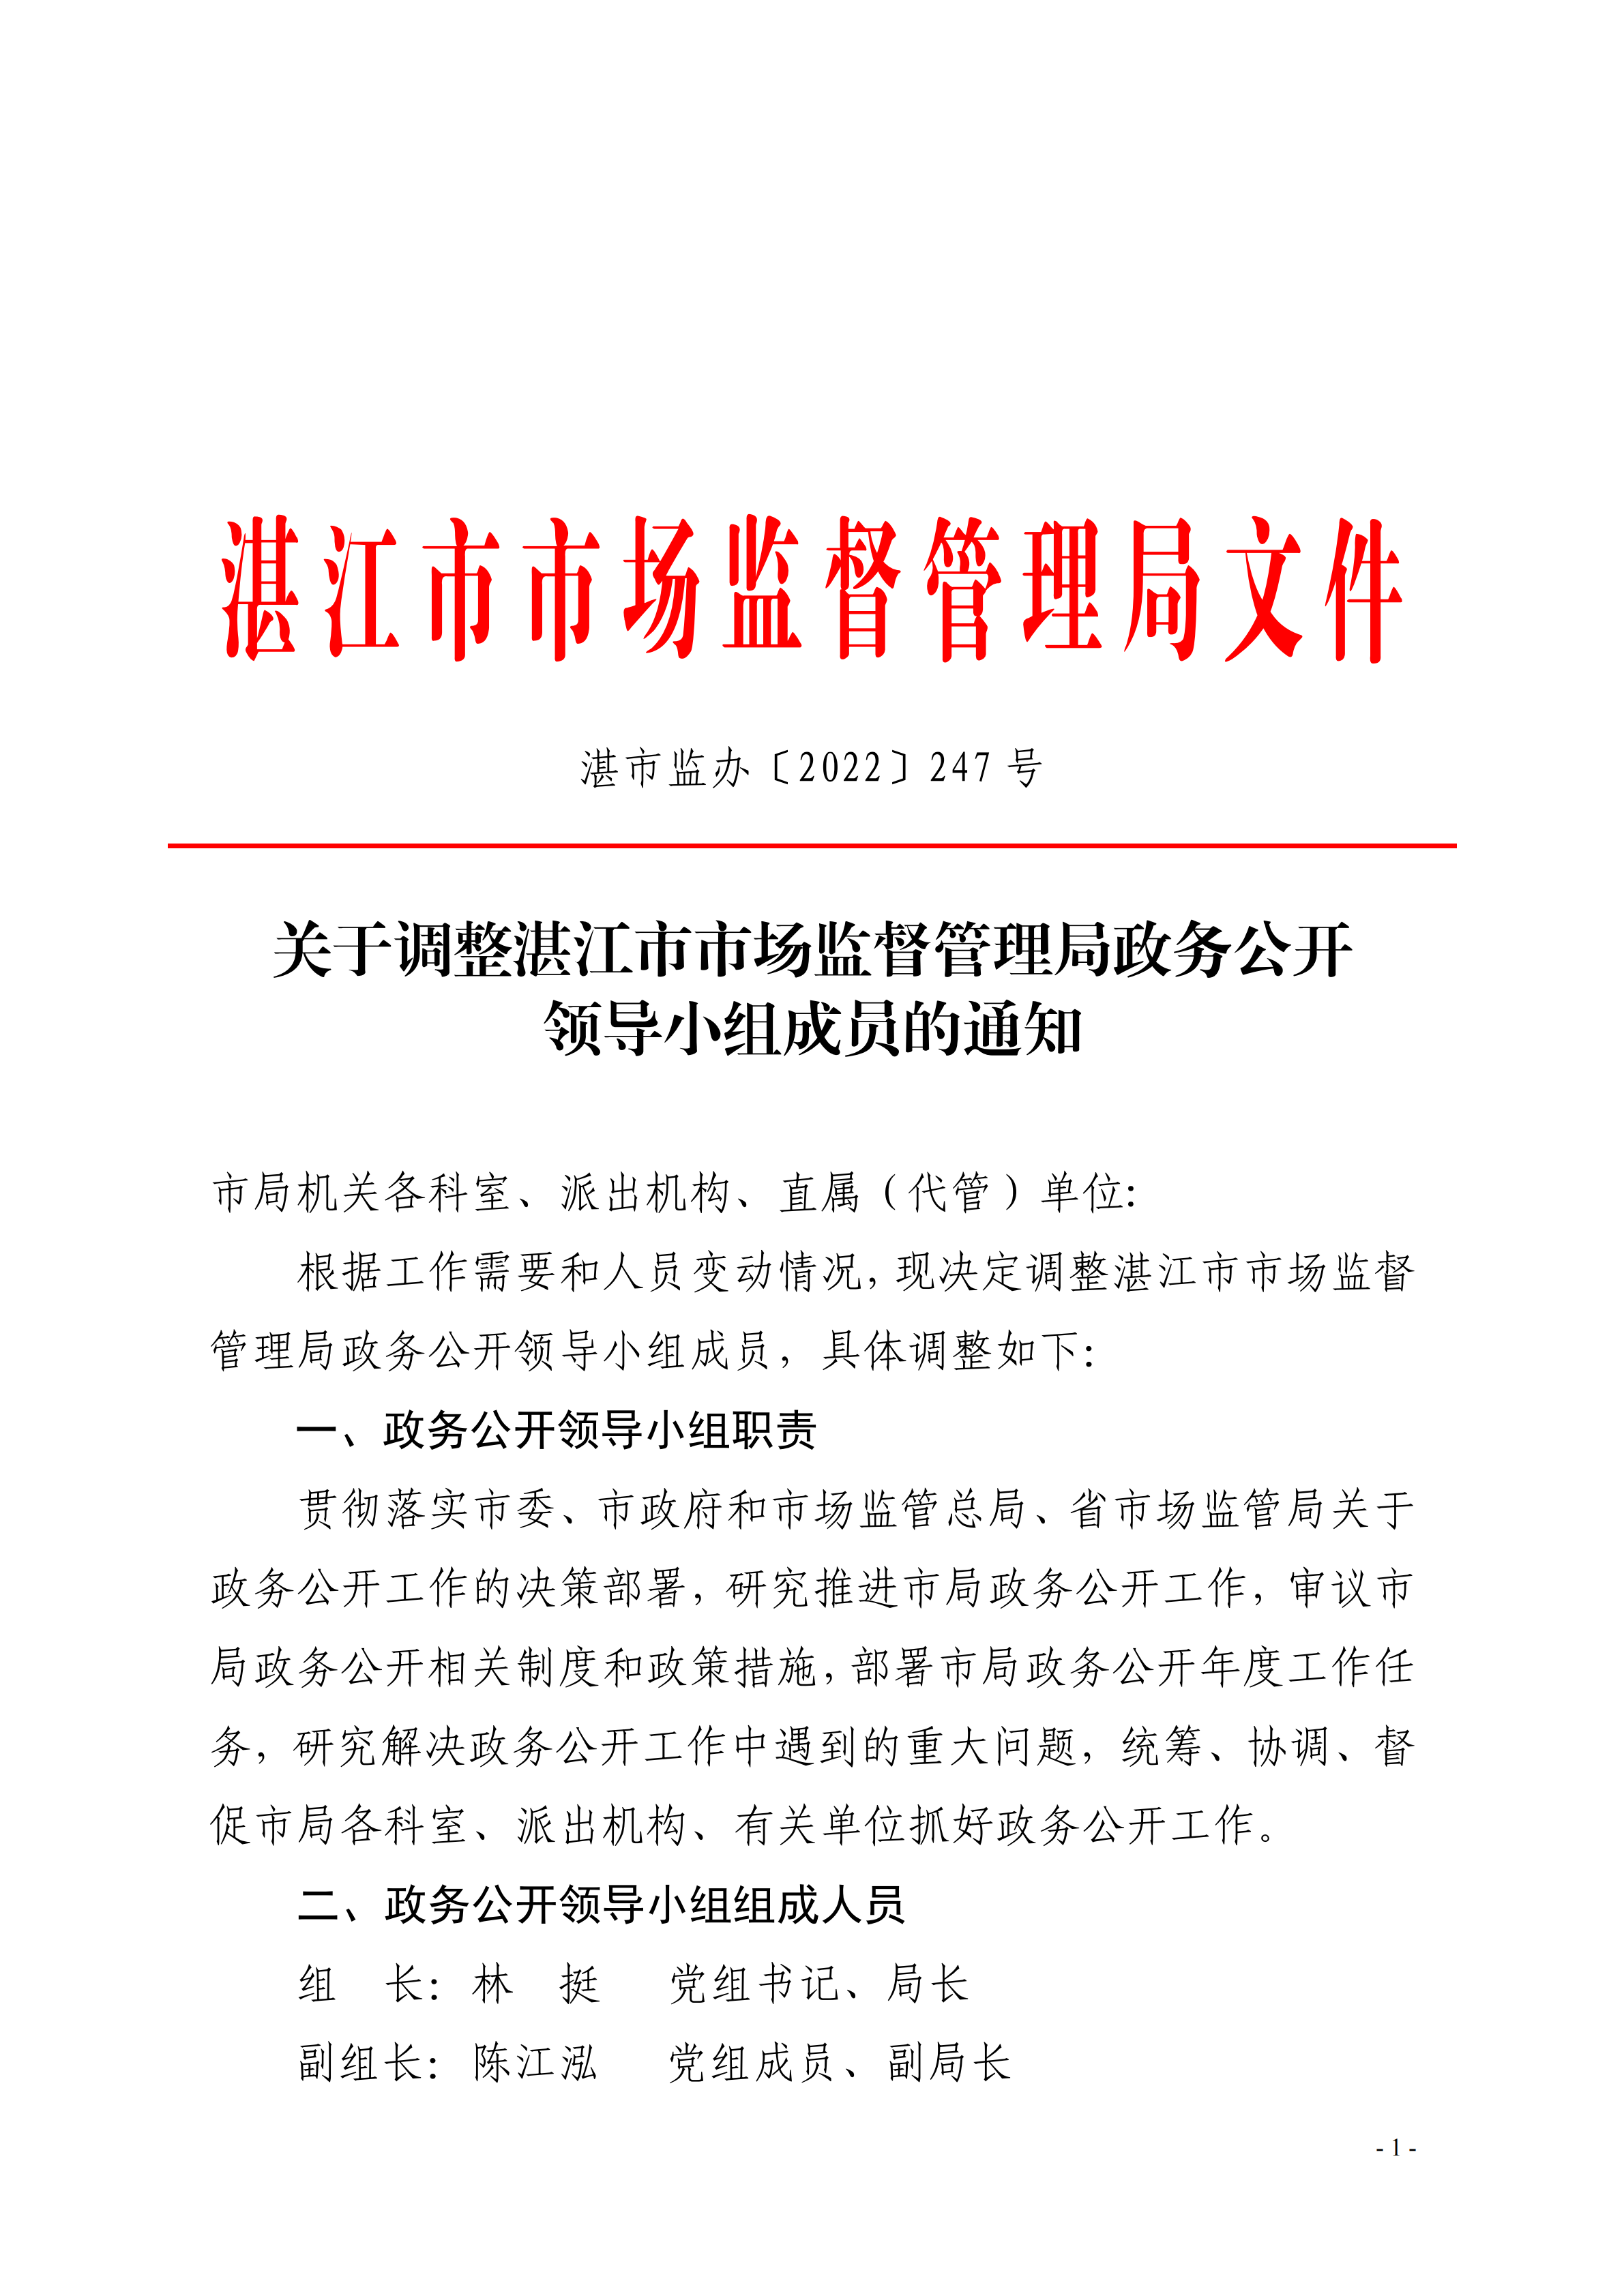 关于调整湛江市市场监督管理局政务公开领导小组成员的通知_00.png